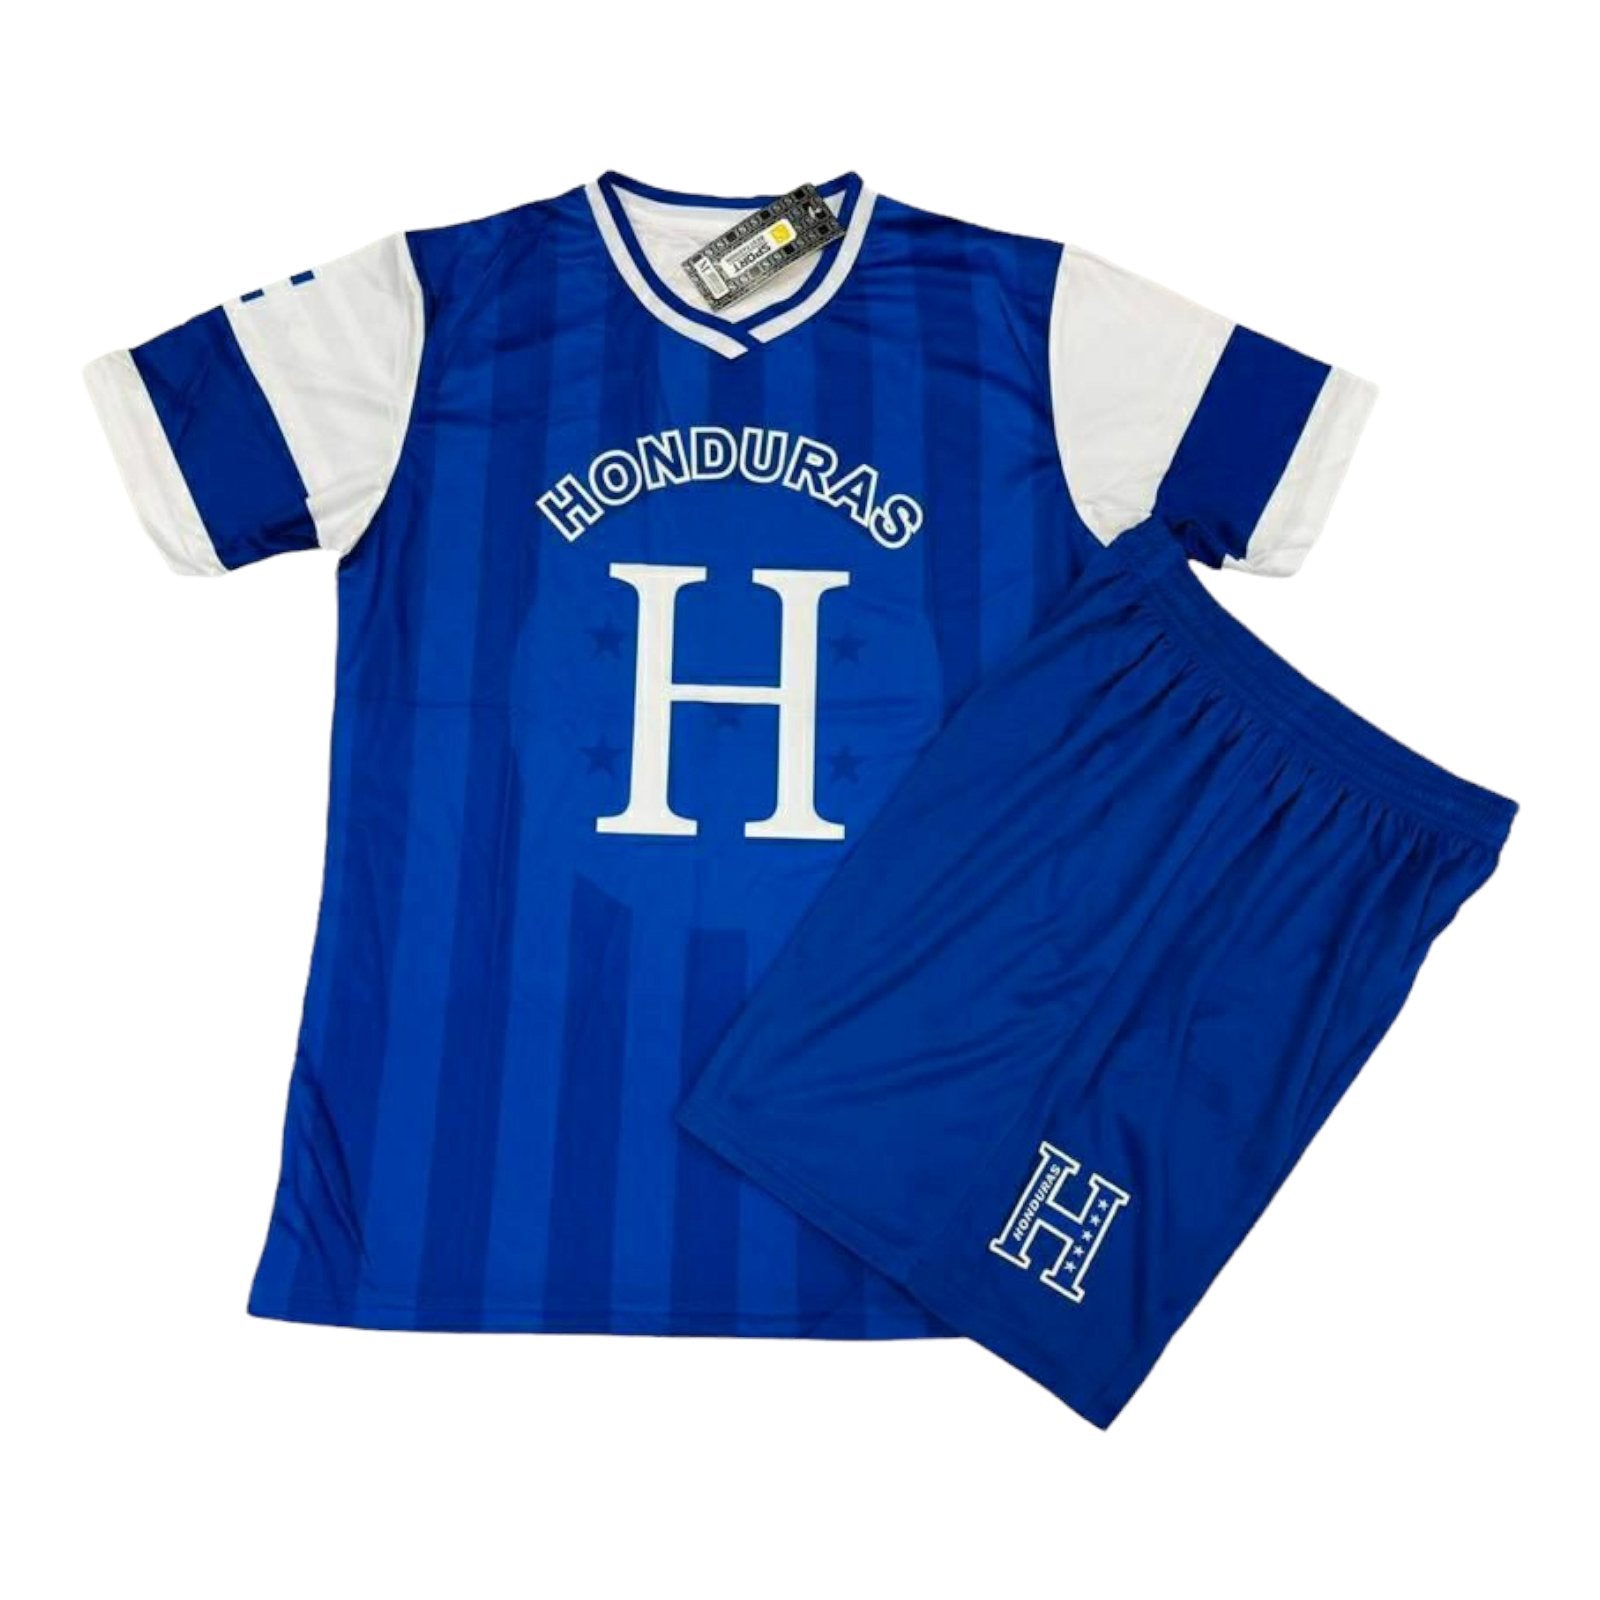 HONDURAS Men's Sports Soccer Jersey T-Shirts Short 00137 -